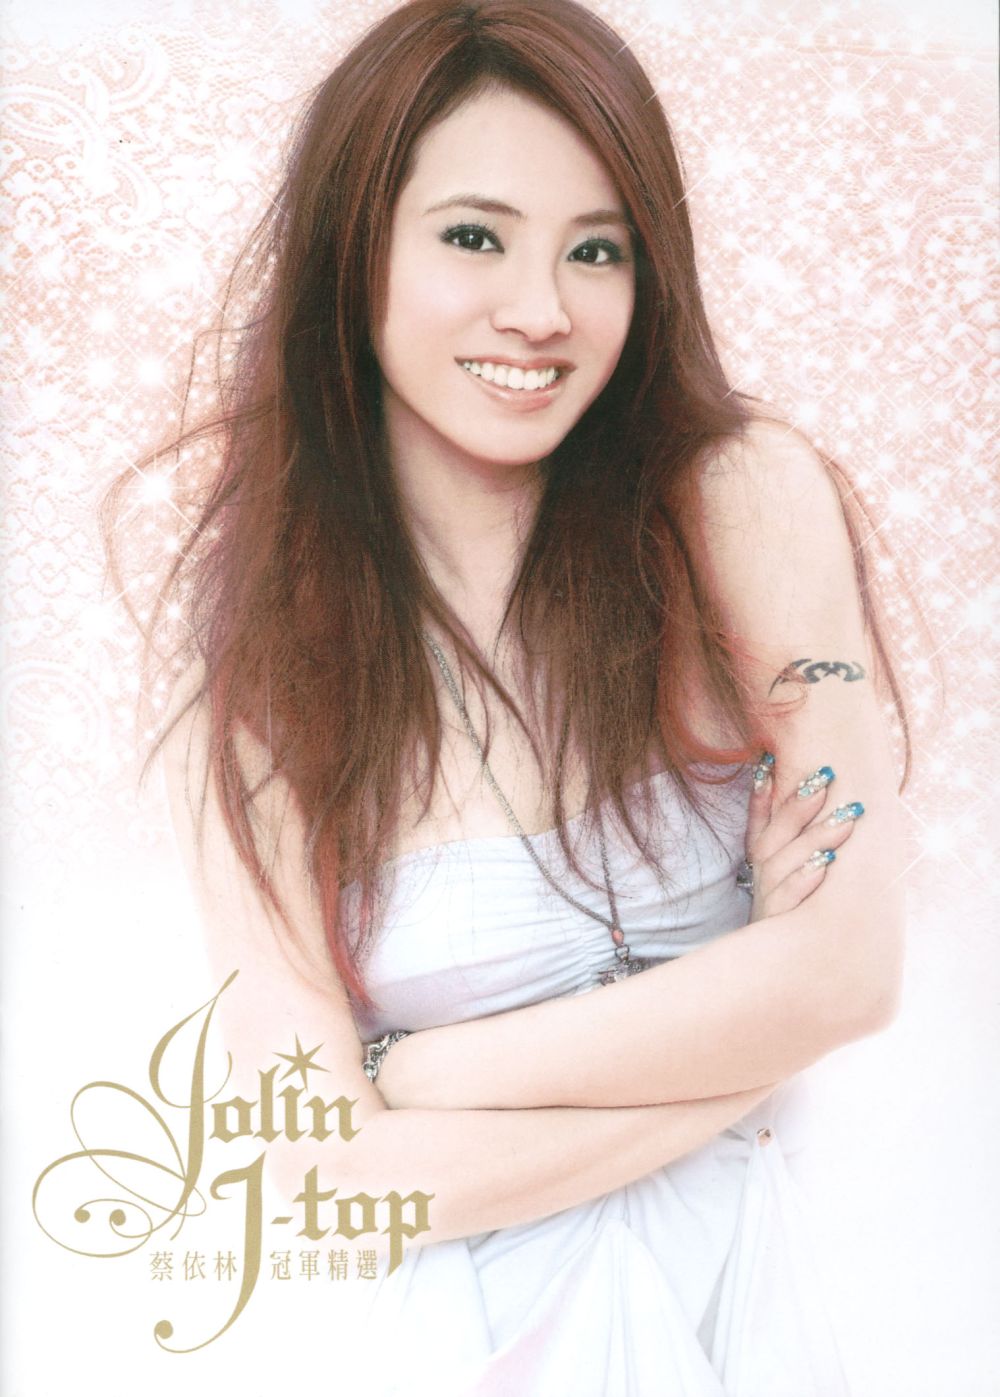 Jolin Tsai Sexy and Hottest Photos , Latest Pics